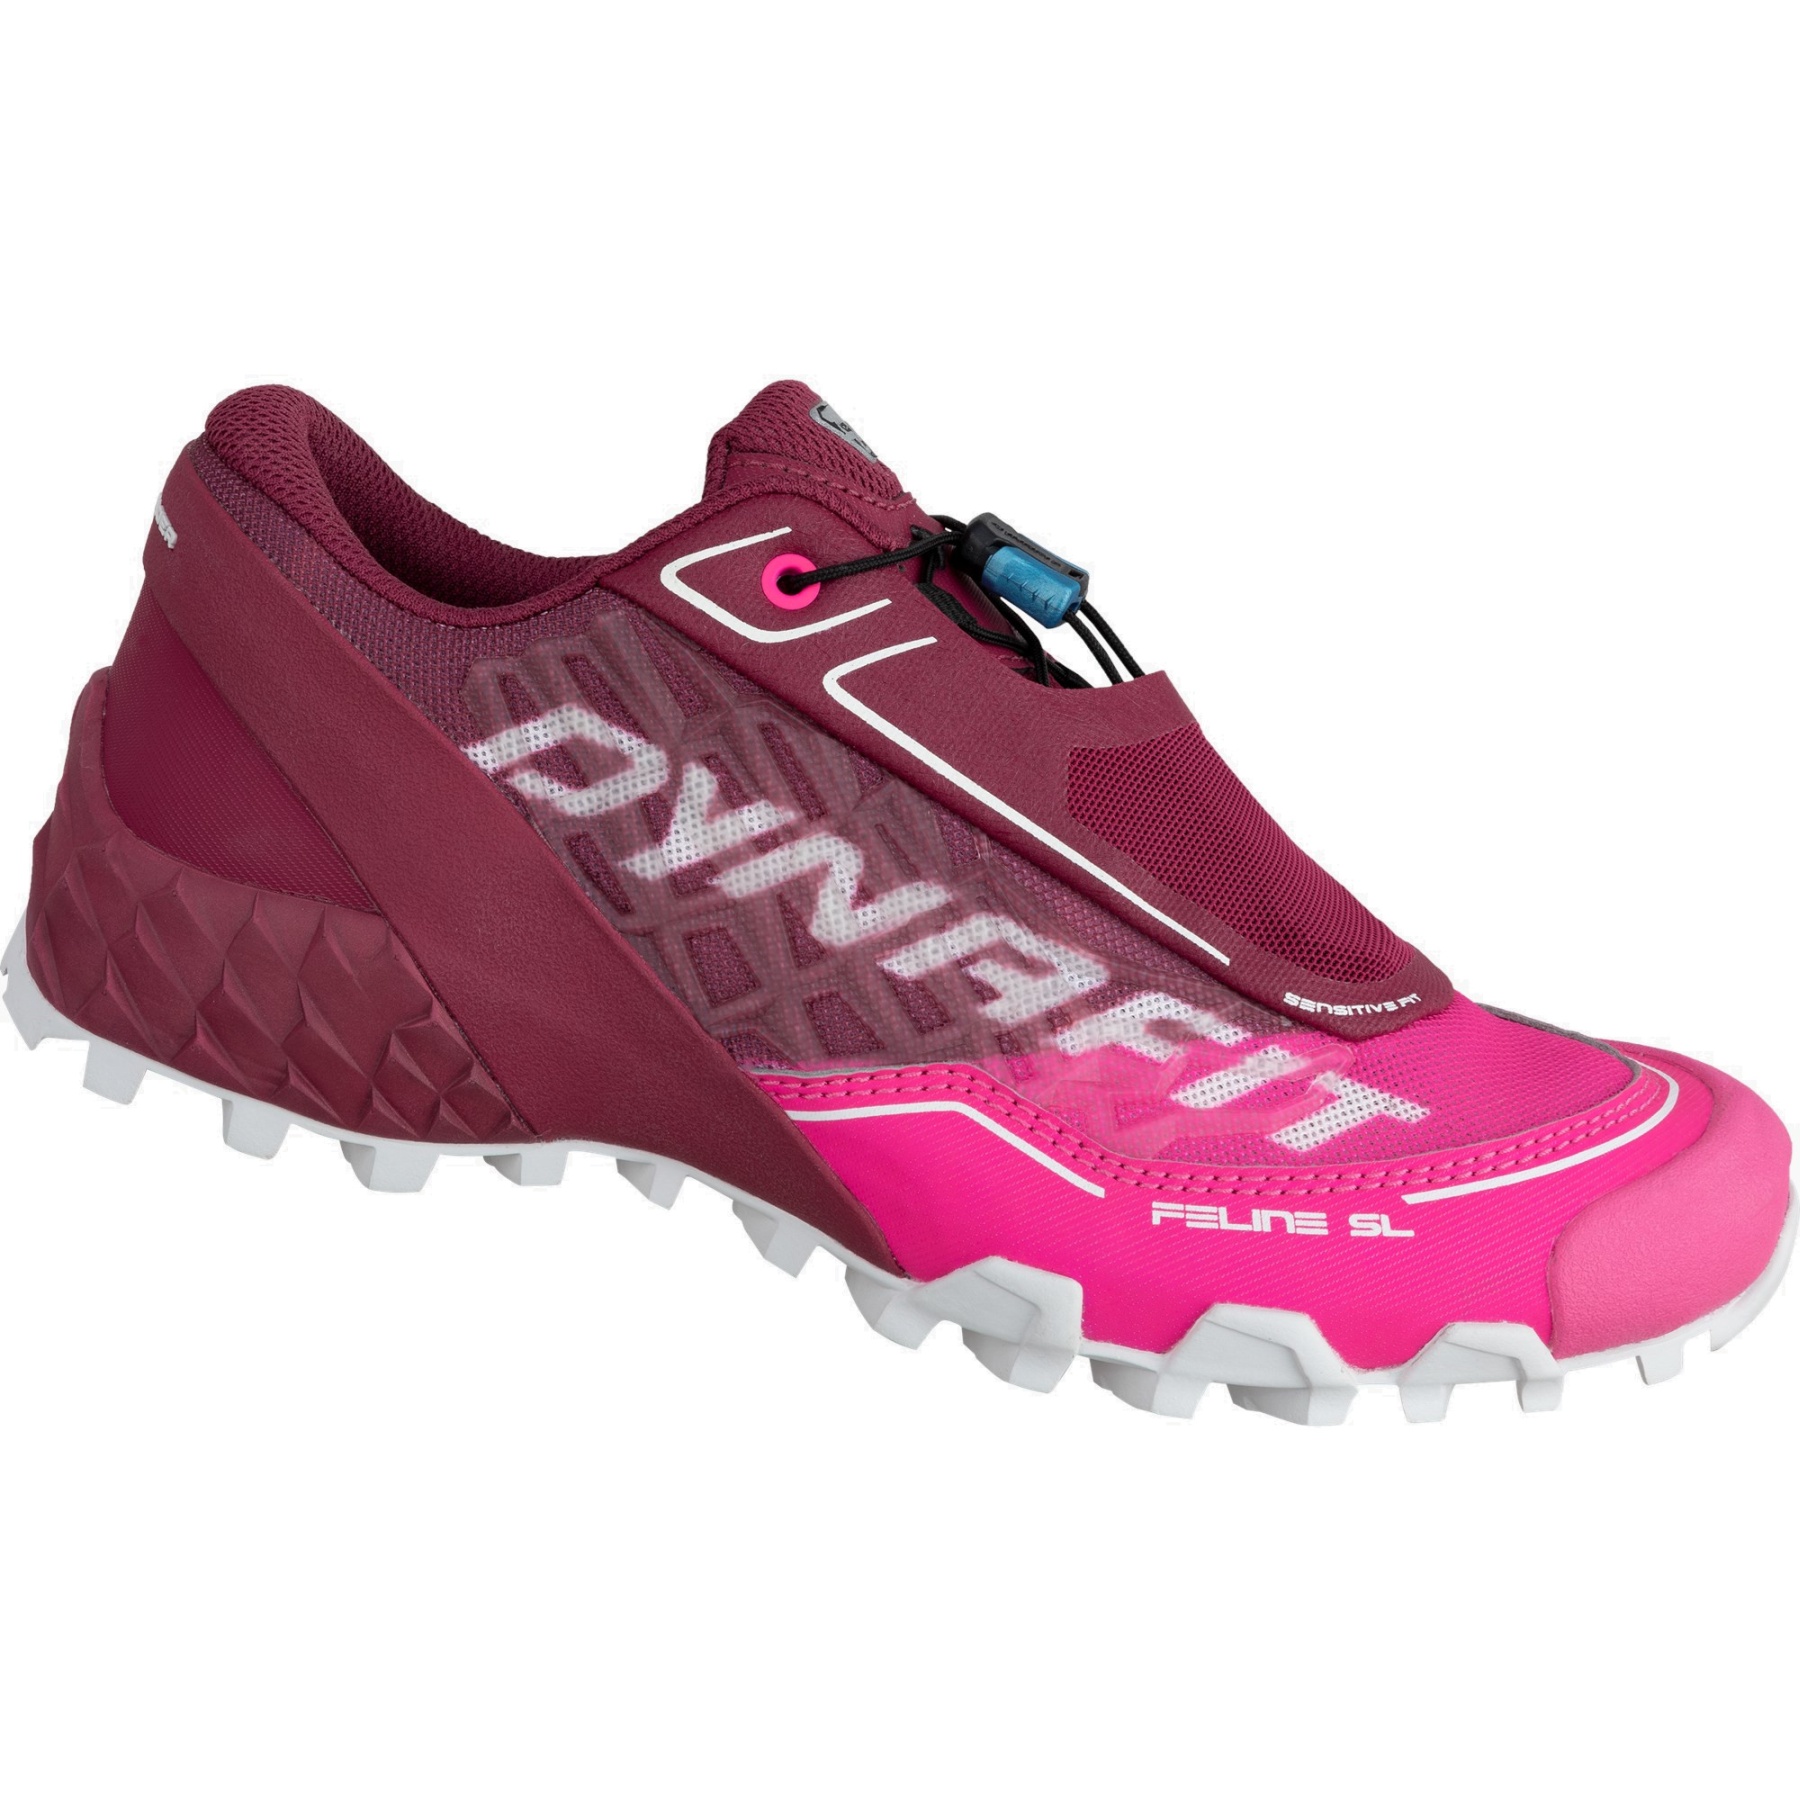 Produktbild von Dynafit Feline SL Laufschuhe Damen - Beet Red Pink Glo